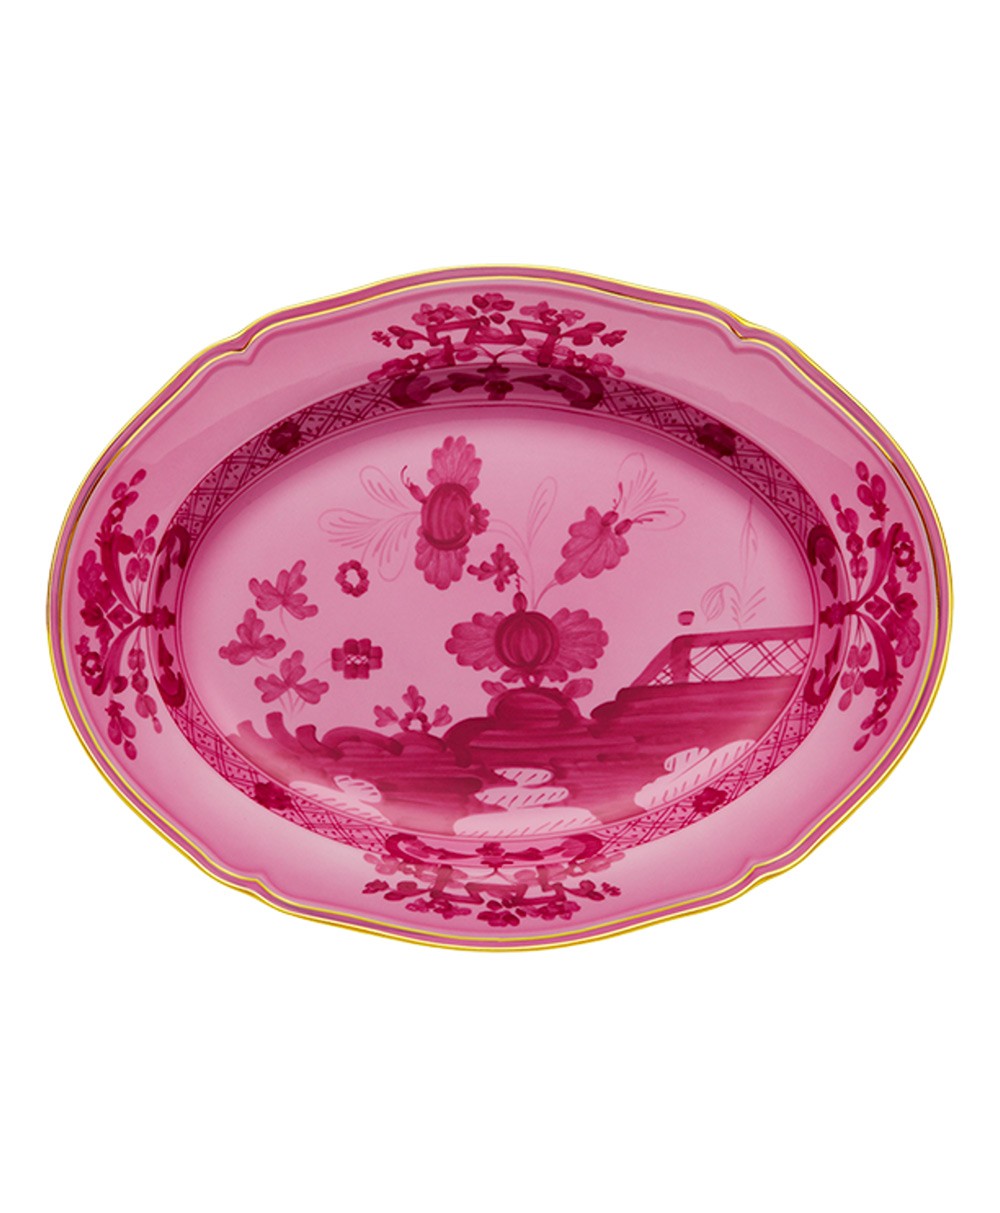 Produktbild "Oriente Porpora Platte" von Ginori 1735 im RAUM Concept store